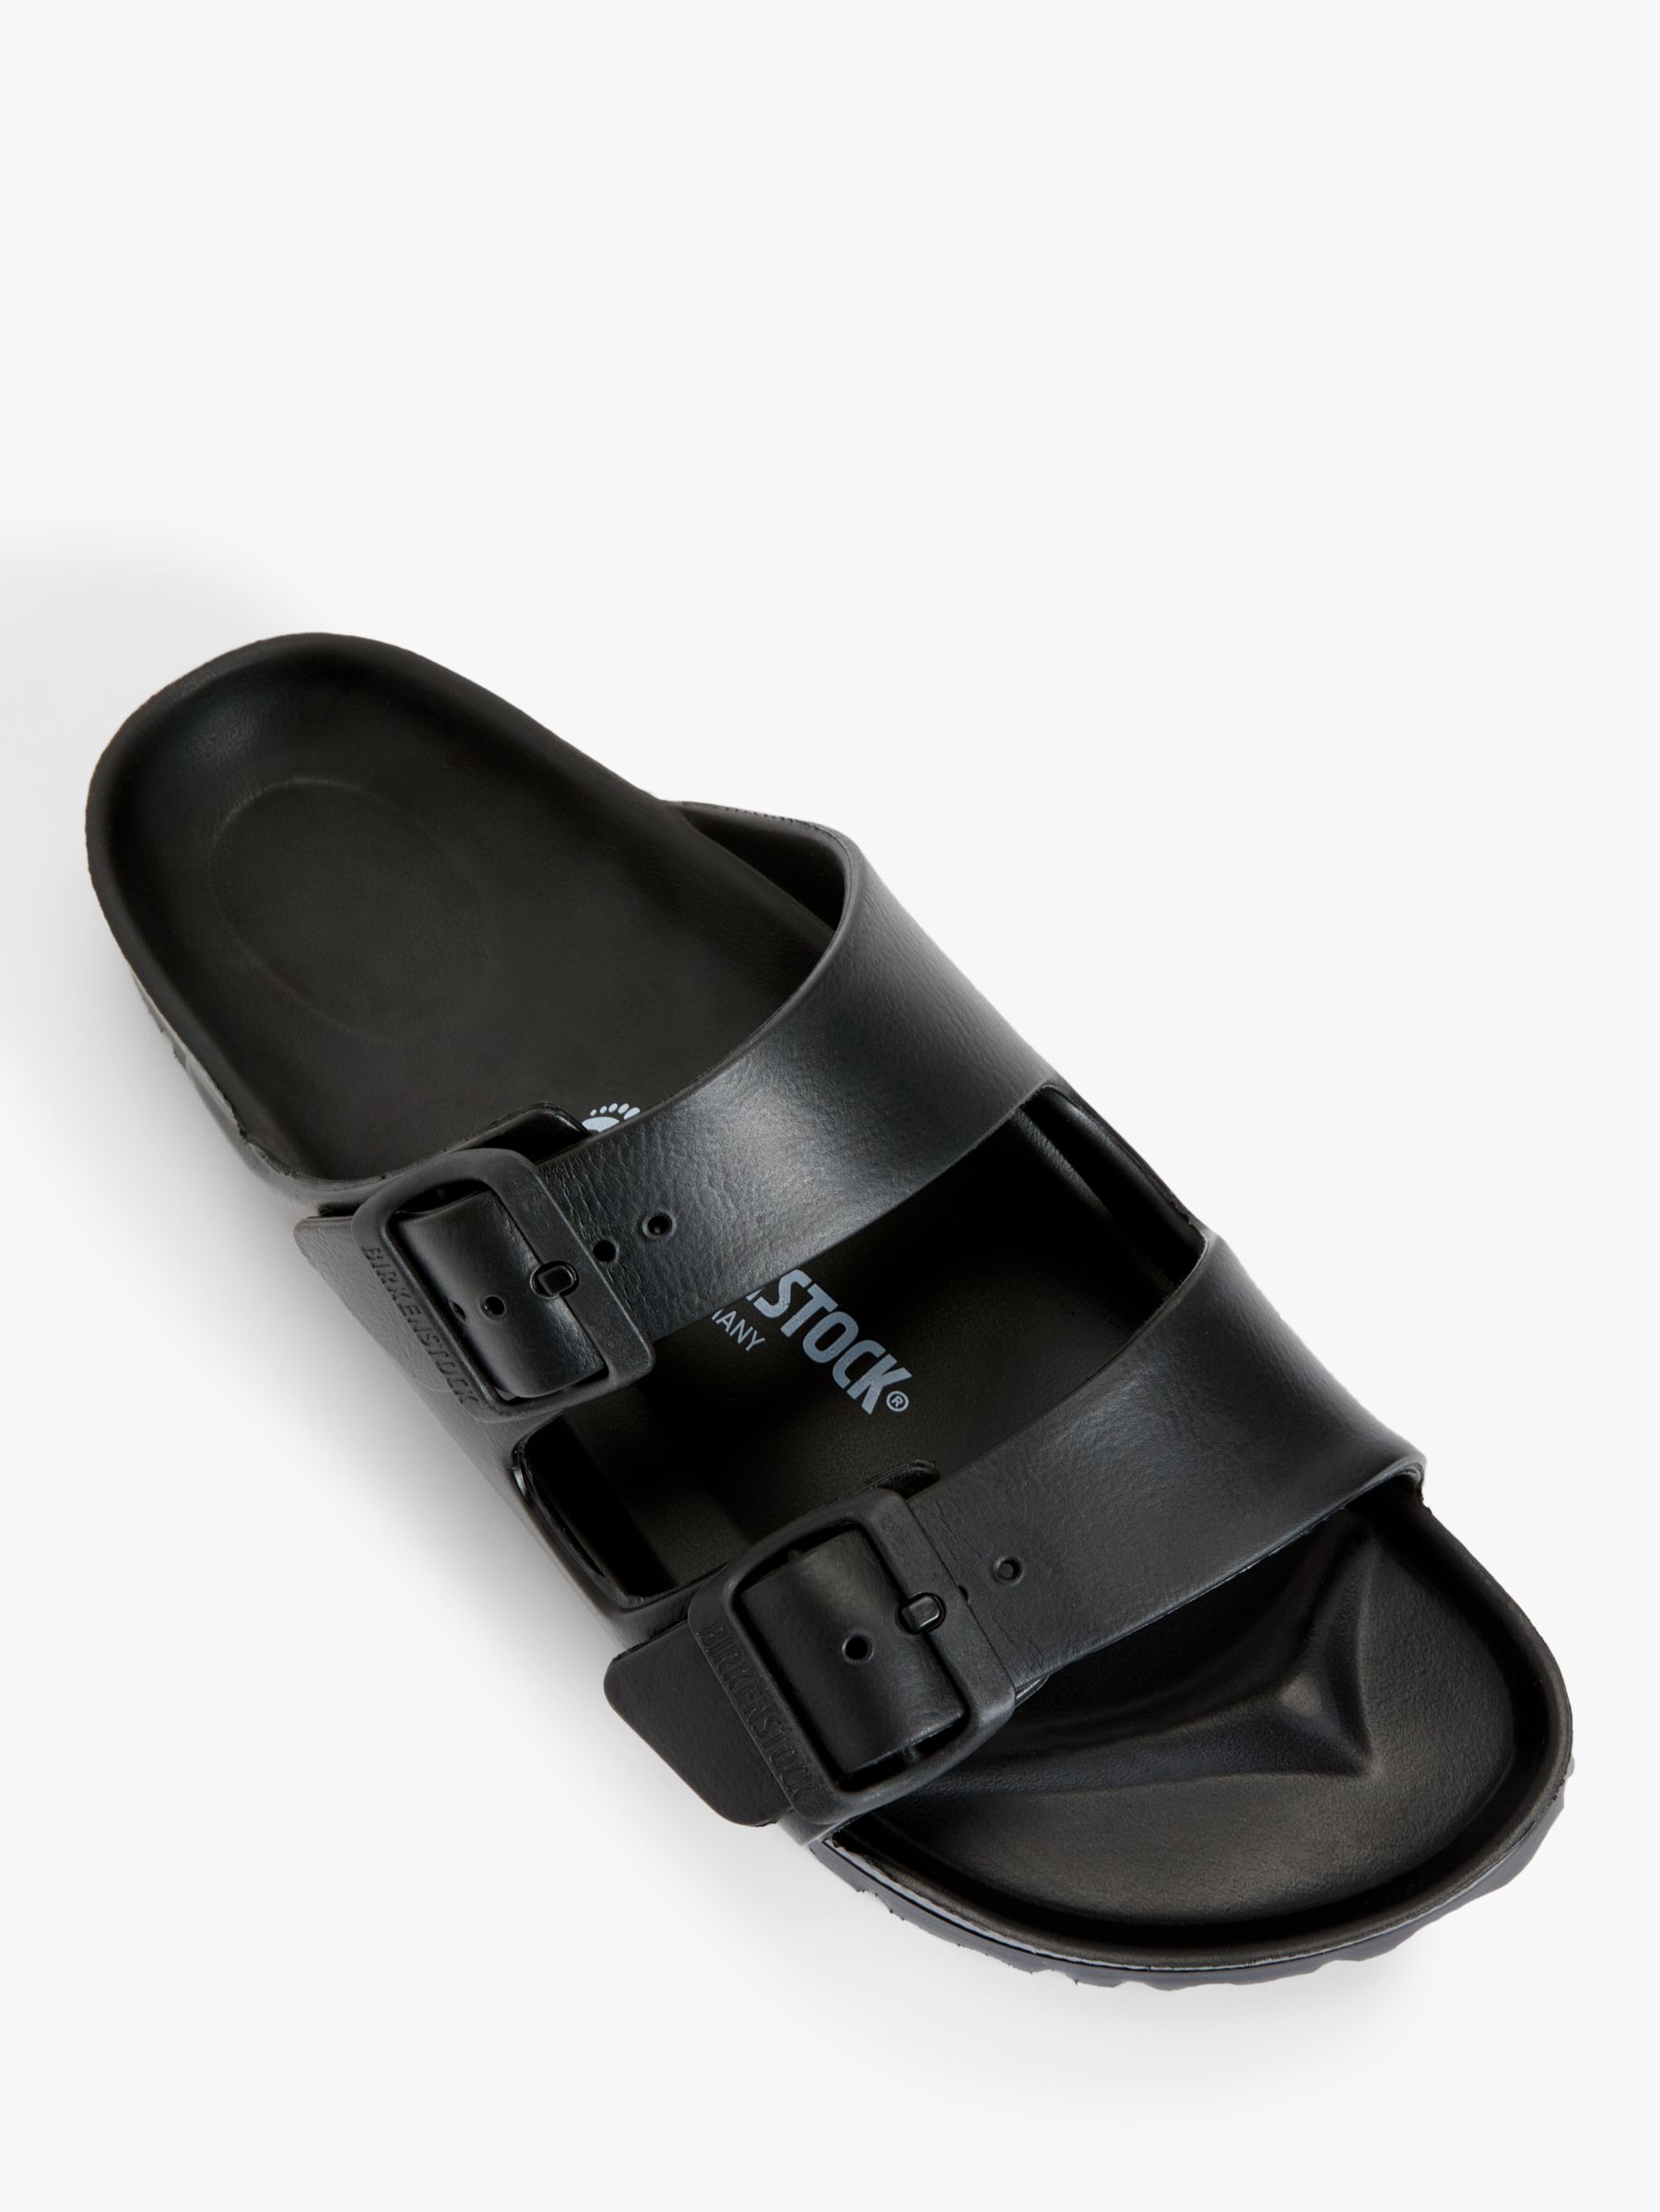 Birkenstock Arizona Narrow Fit Waterproof EVA Double Strap Sandals, Black, 39